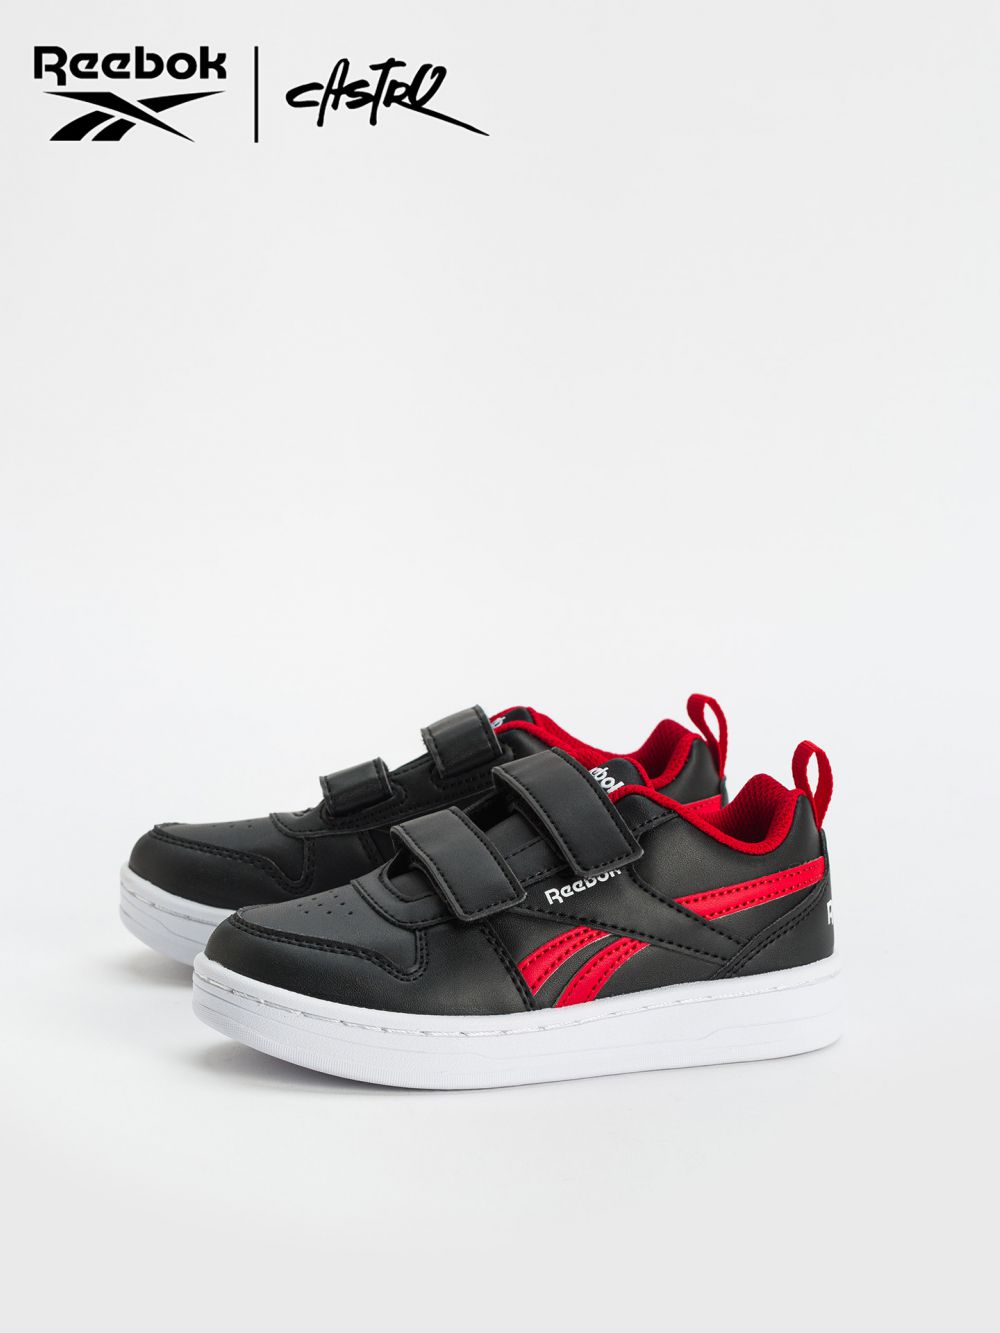 נעלי Reebok שחור ואדום / ילדים